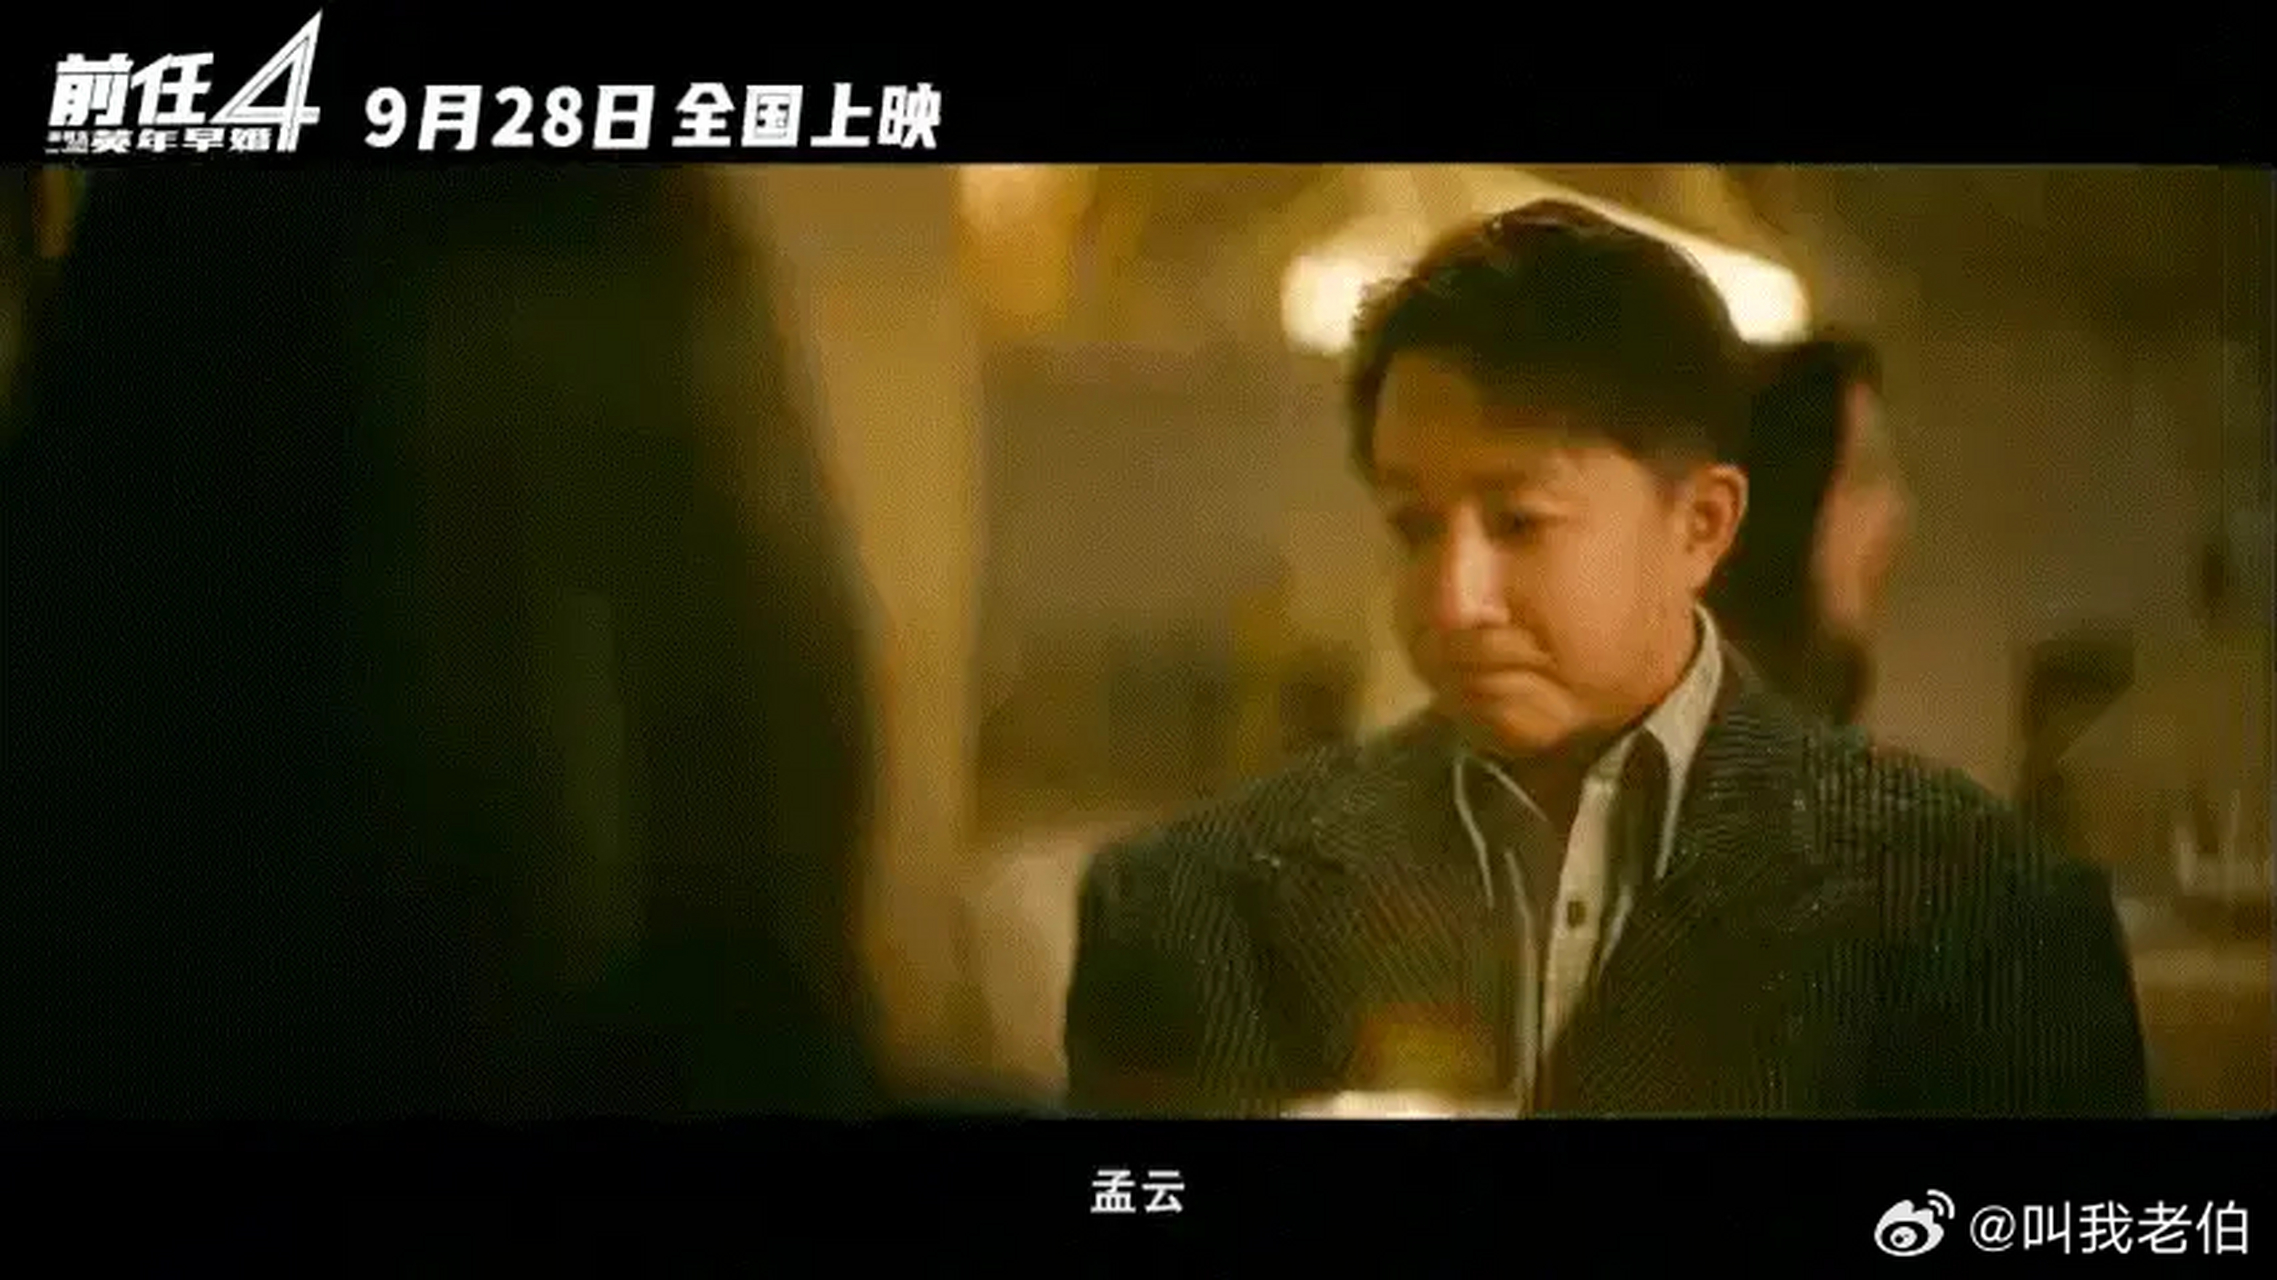 郑恺和韩庚的《前任四》快上映了,这个ip是他倆的养老作品吧?[吃瓜]